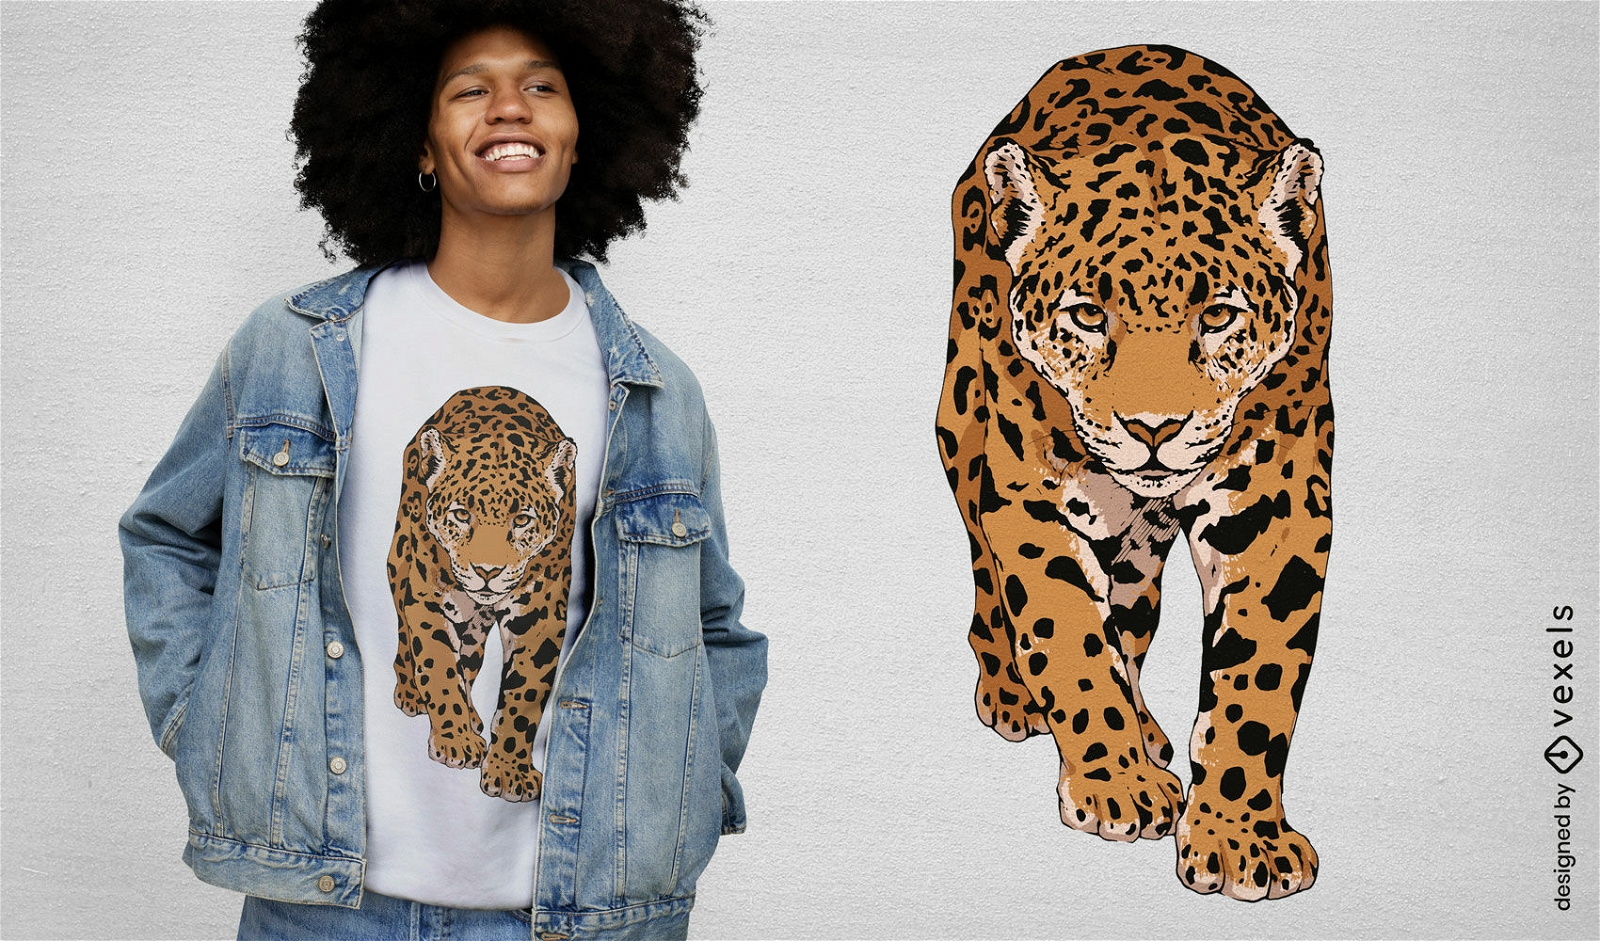 Dise?o de camiseta de animal jaguar salvaje.